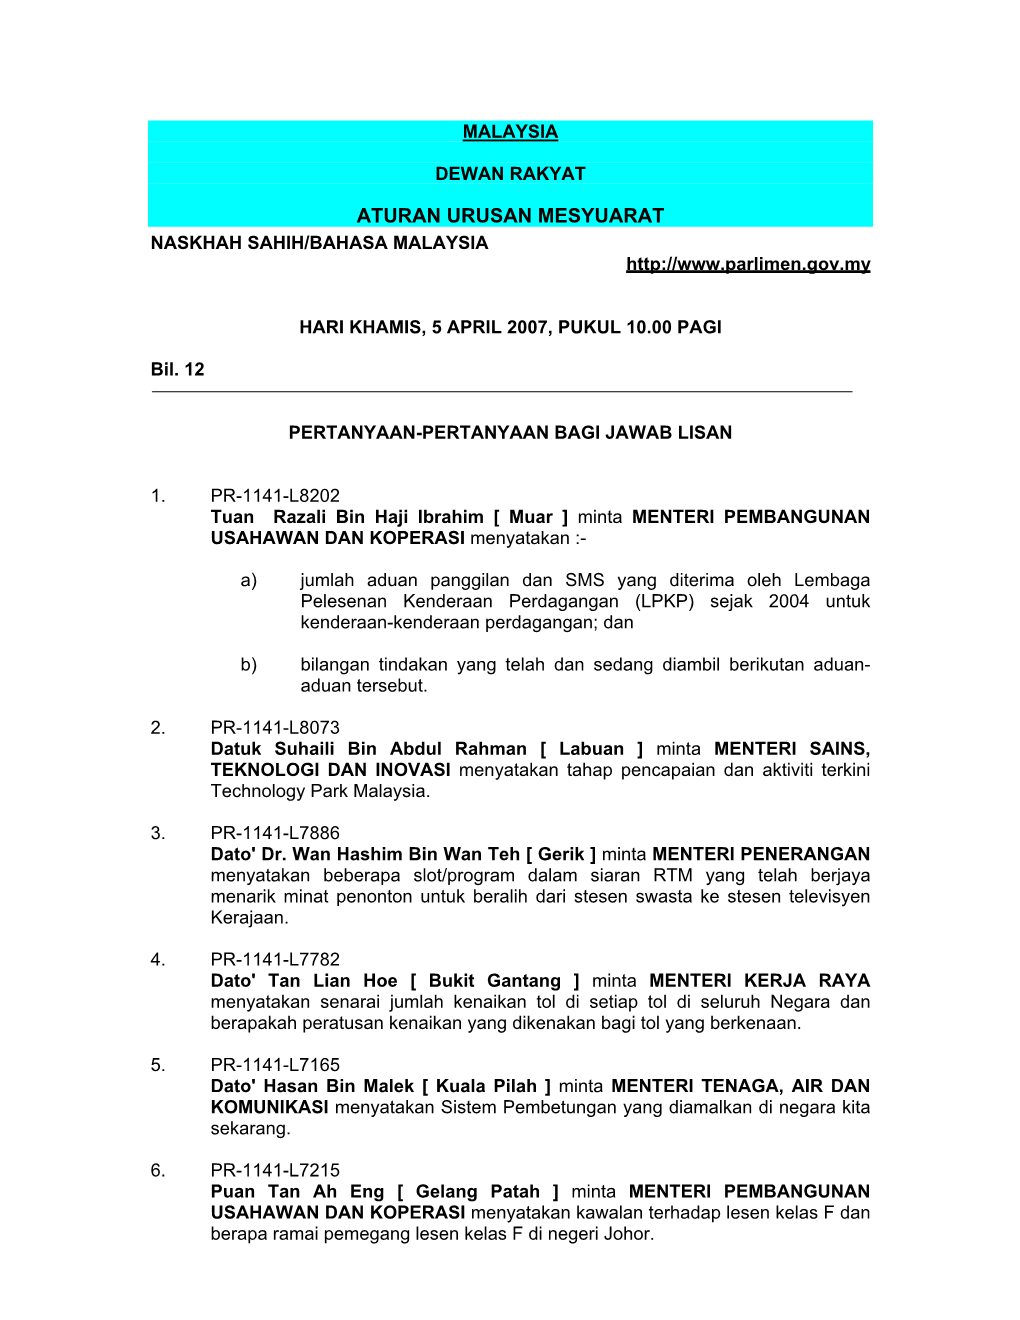 Aturan Urusan Mesyuarat Naskhah Sahih/Bahasa Malaysia